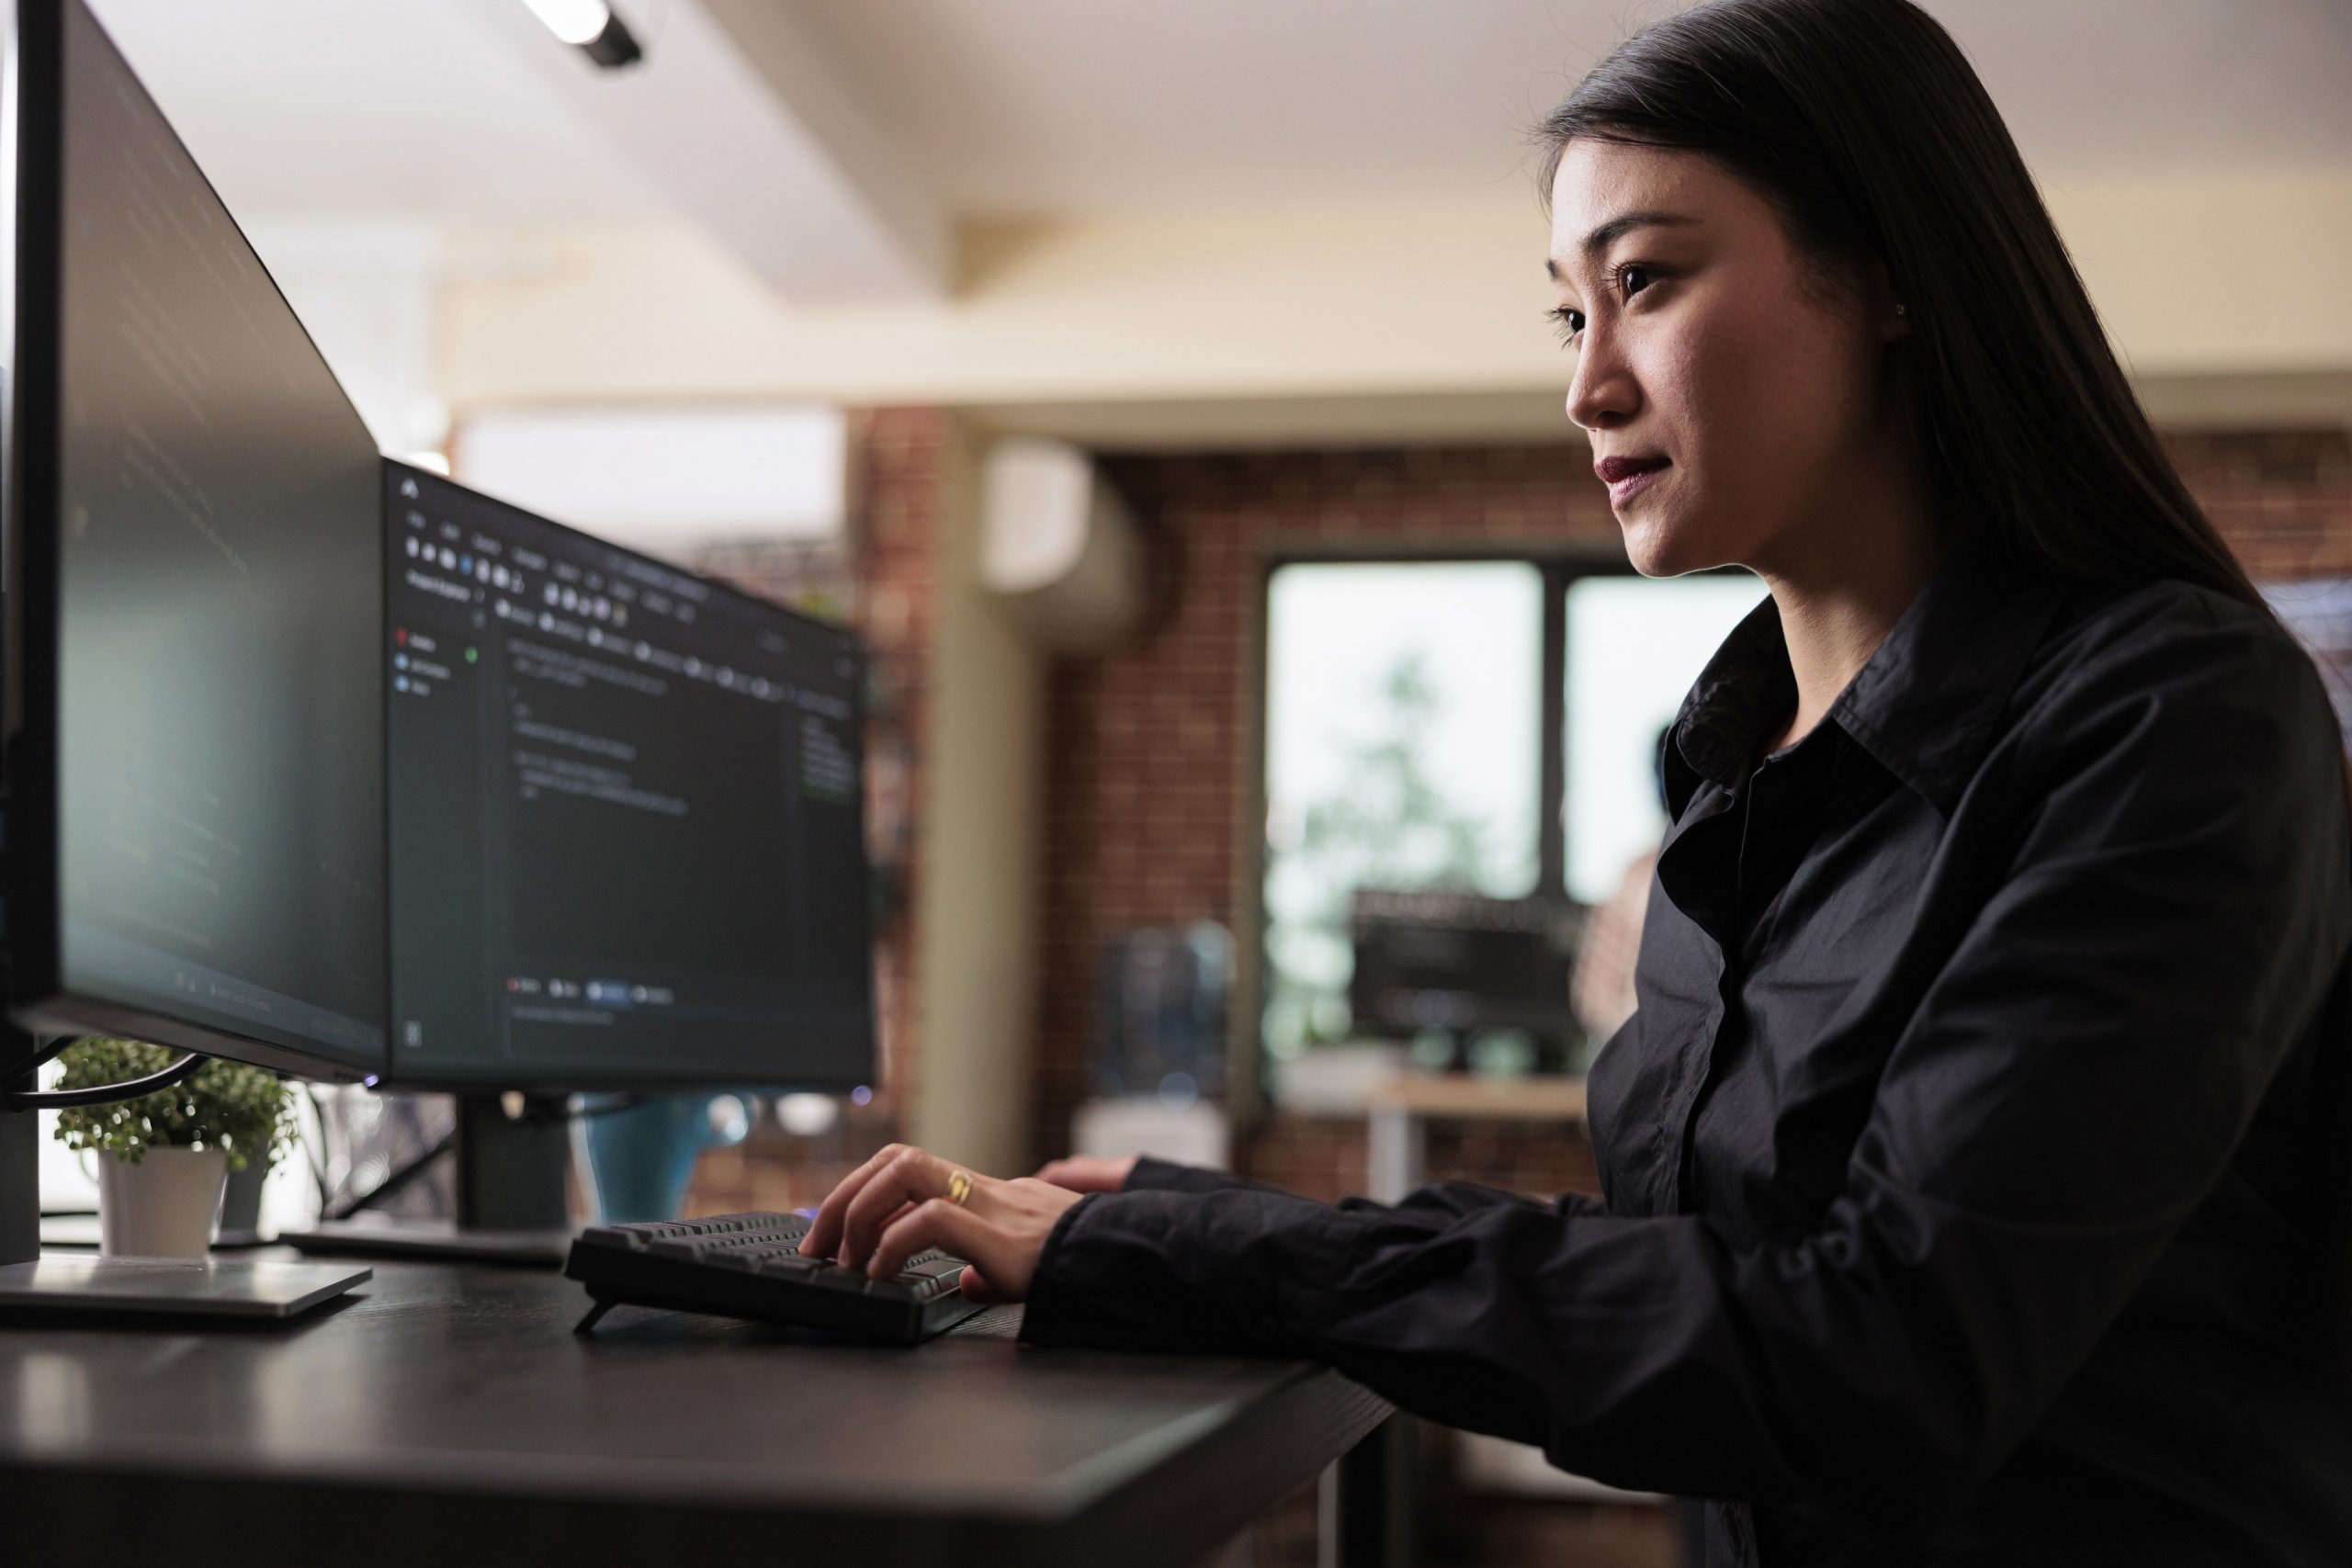 Imagem de uma mulher asiática branca de cabelos pretos cumpridos. Ela veste uma camisa preta de mangas longas e está sentada diante de uma mesa em frente a duas telas de computadores. Ela está digitando e nas telas vemos códigos de segurança.